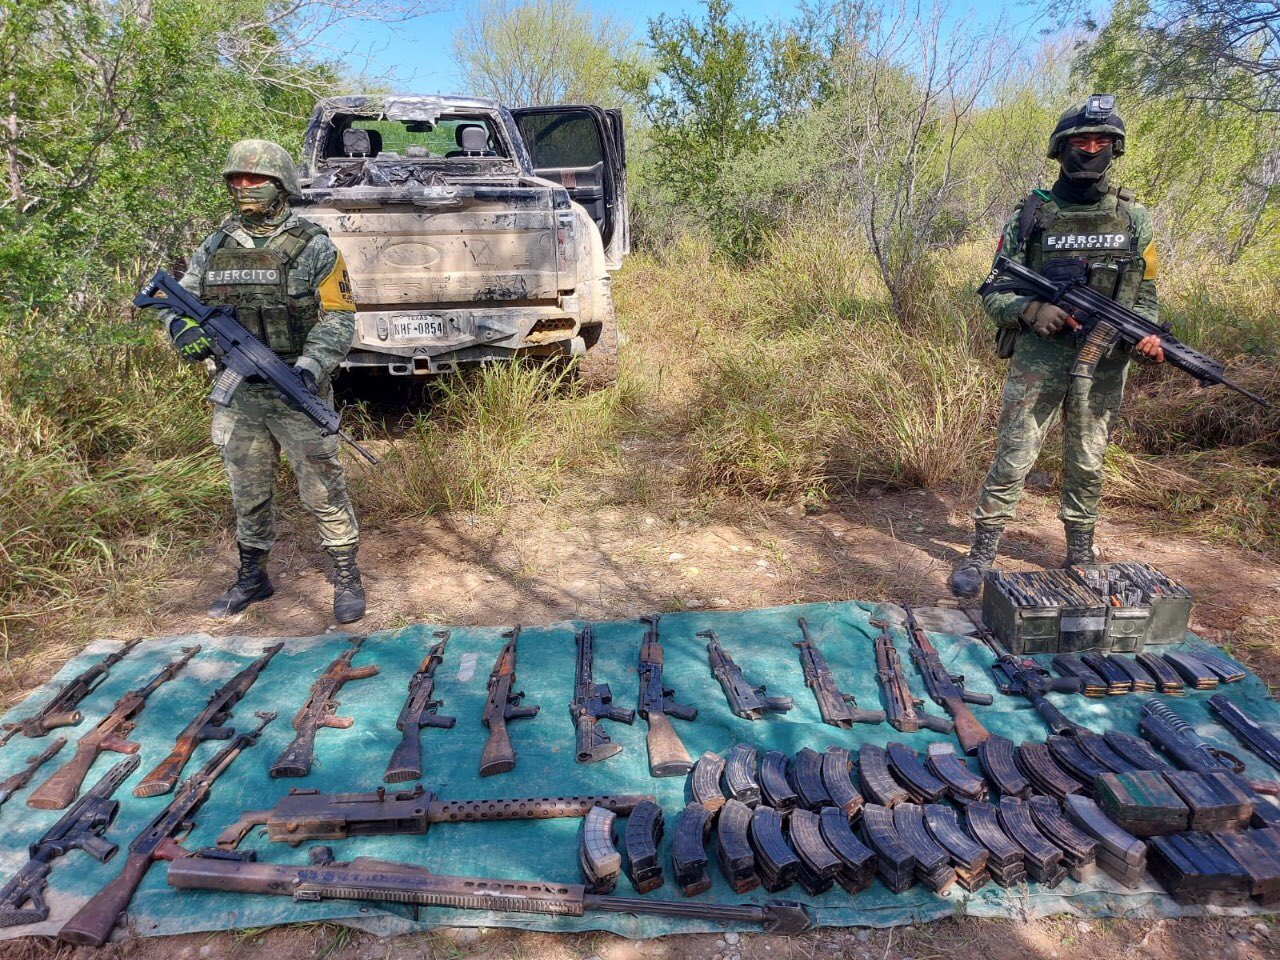 La Sedena y Guardia Nacional han realizado decomiso de arsenales poderosos en posesión del crimen organizado (Foto: Twitter / @LPueblo2)